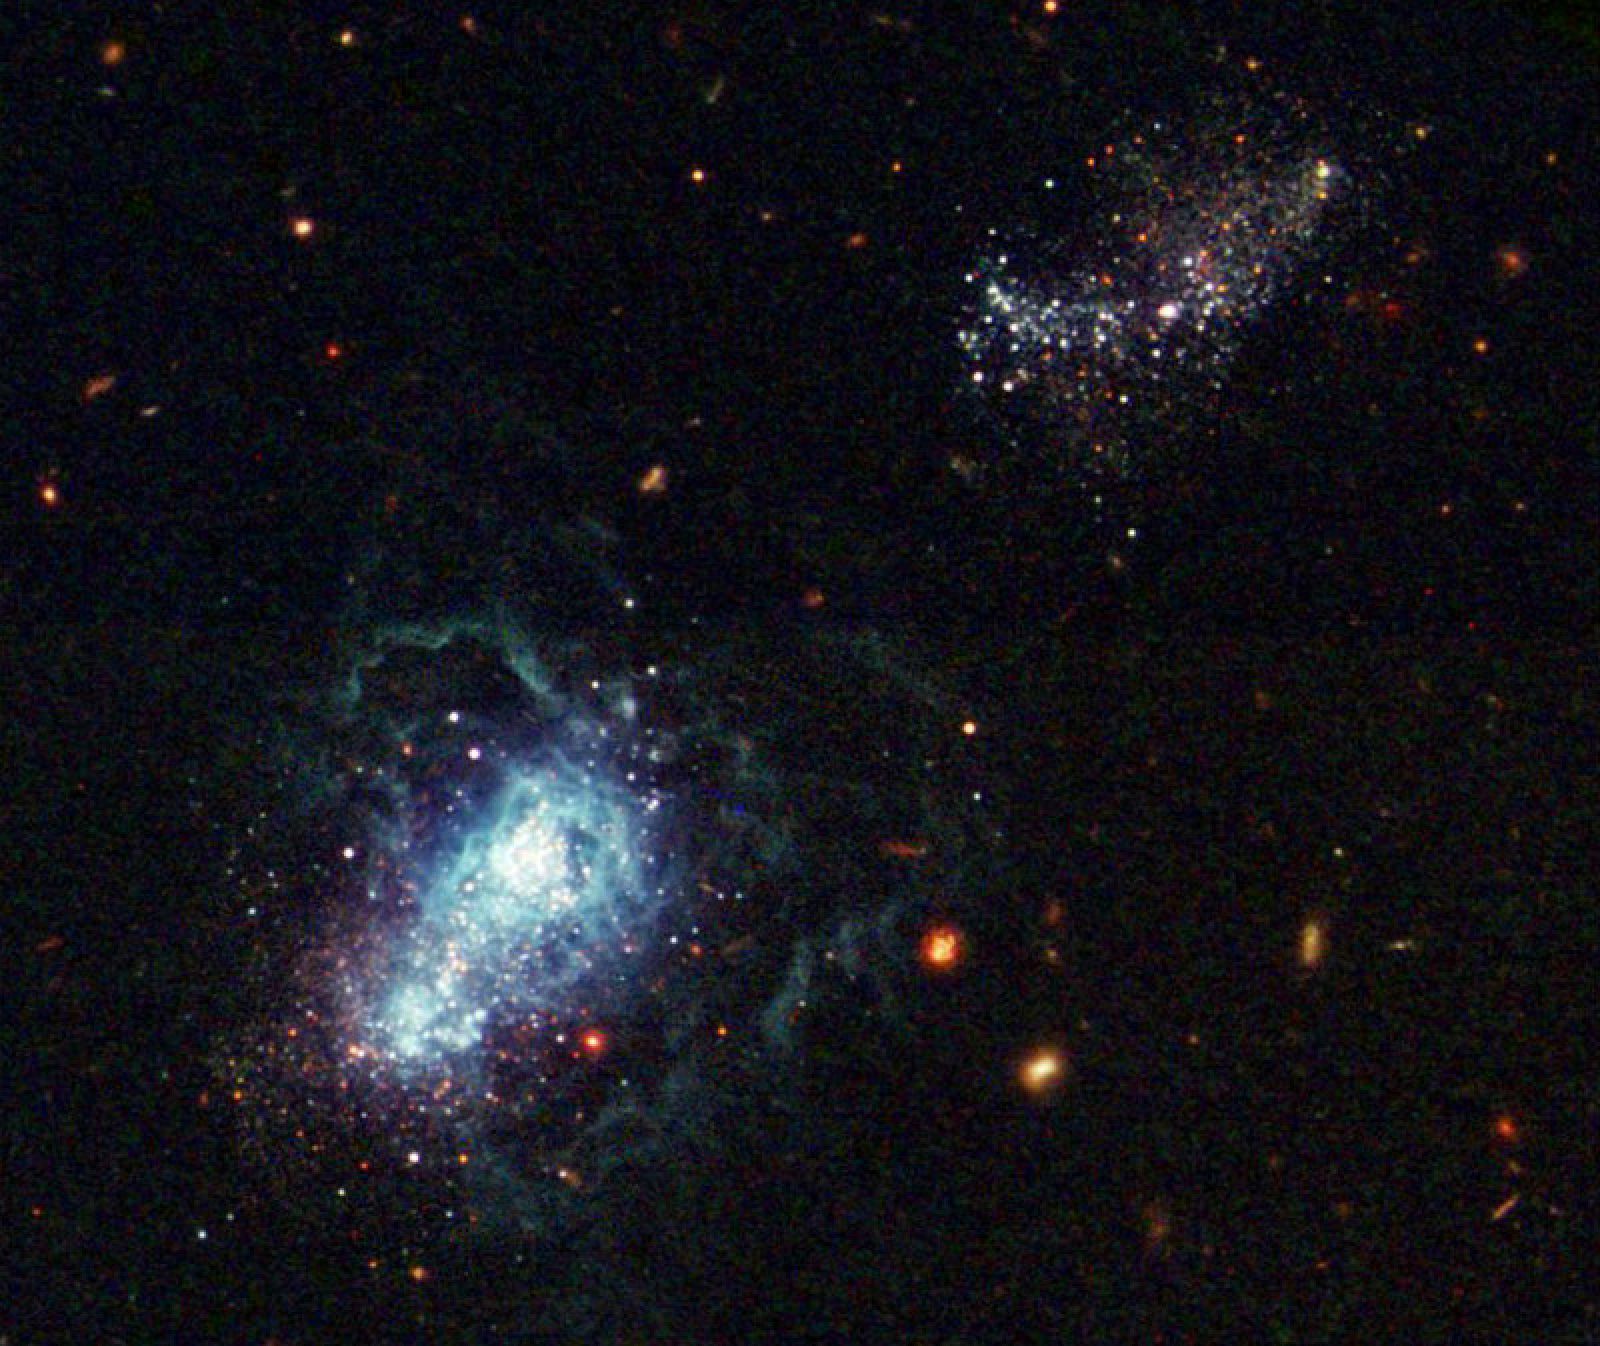 La galaxia IZw18 captado por el Hubble, ACS y WFPC2